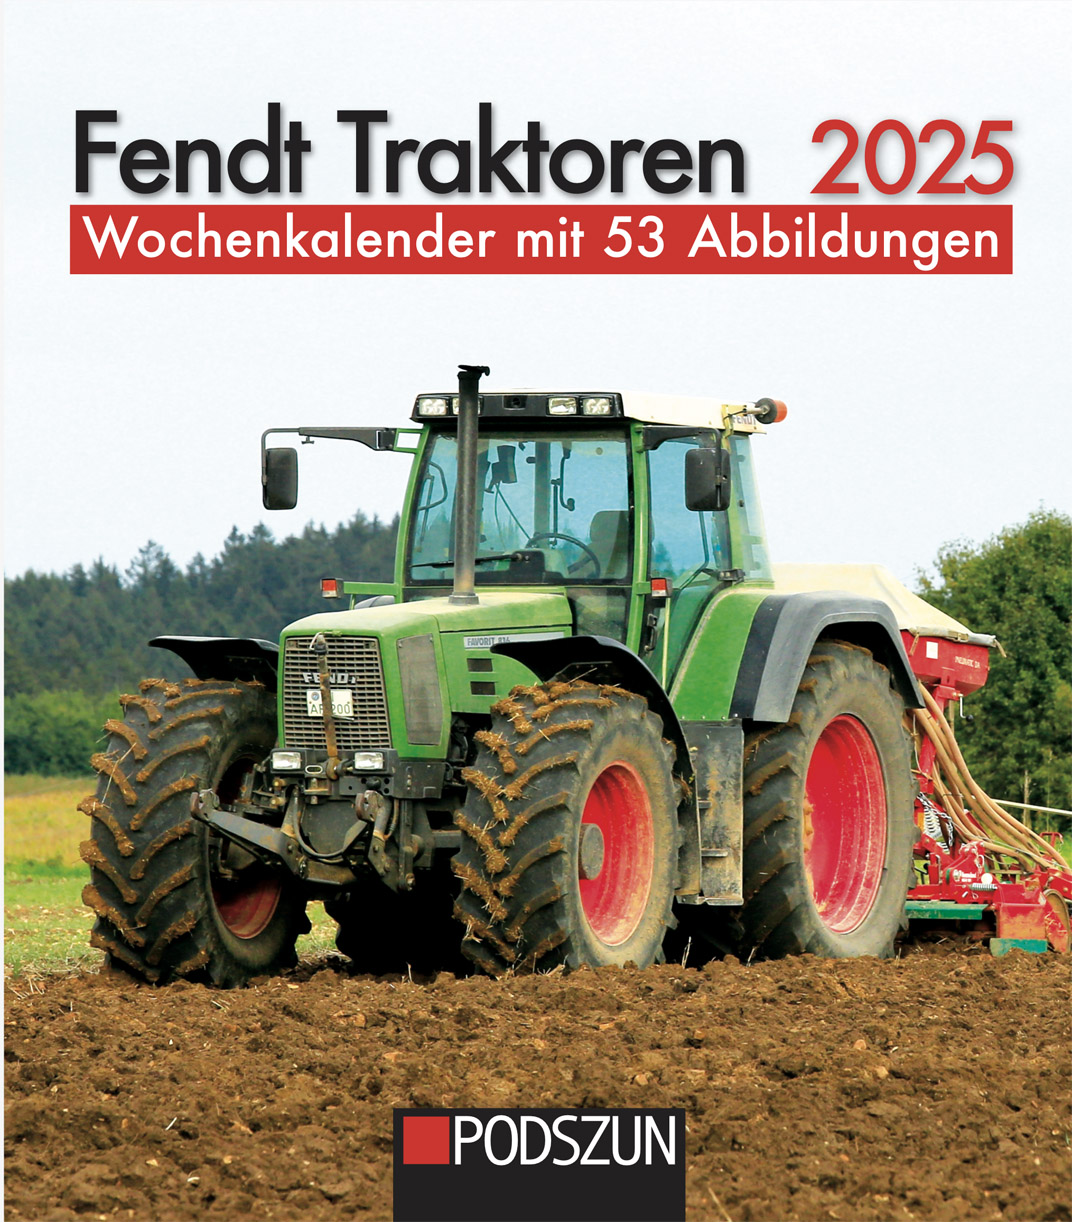 Fendt Traktoren 2025